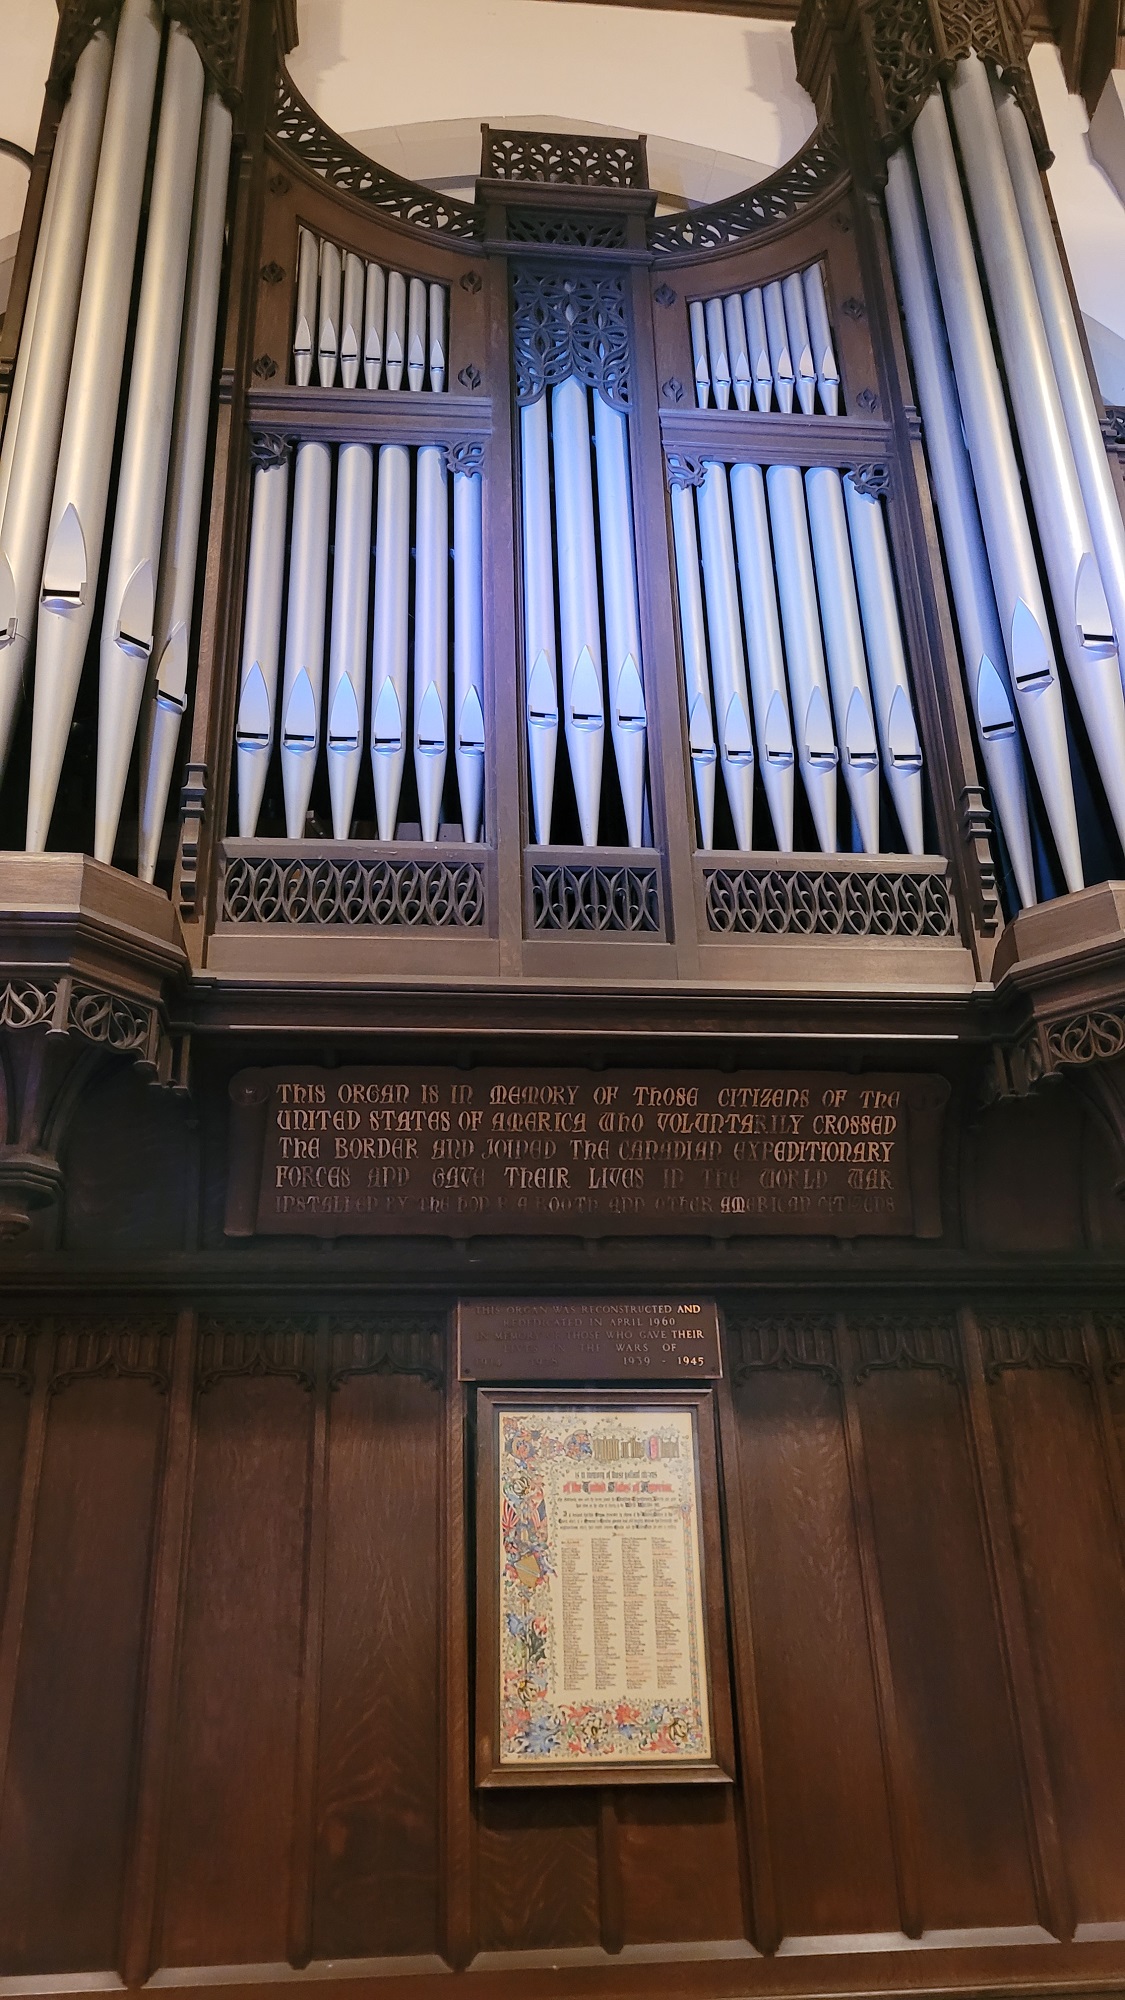 Memorial Organ pipes right side inscription.